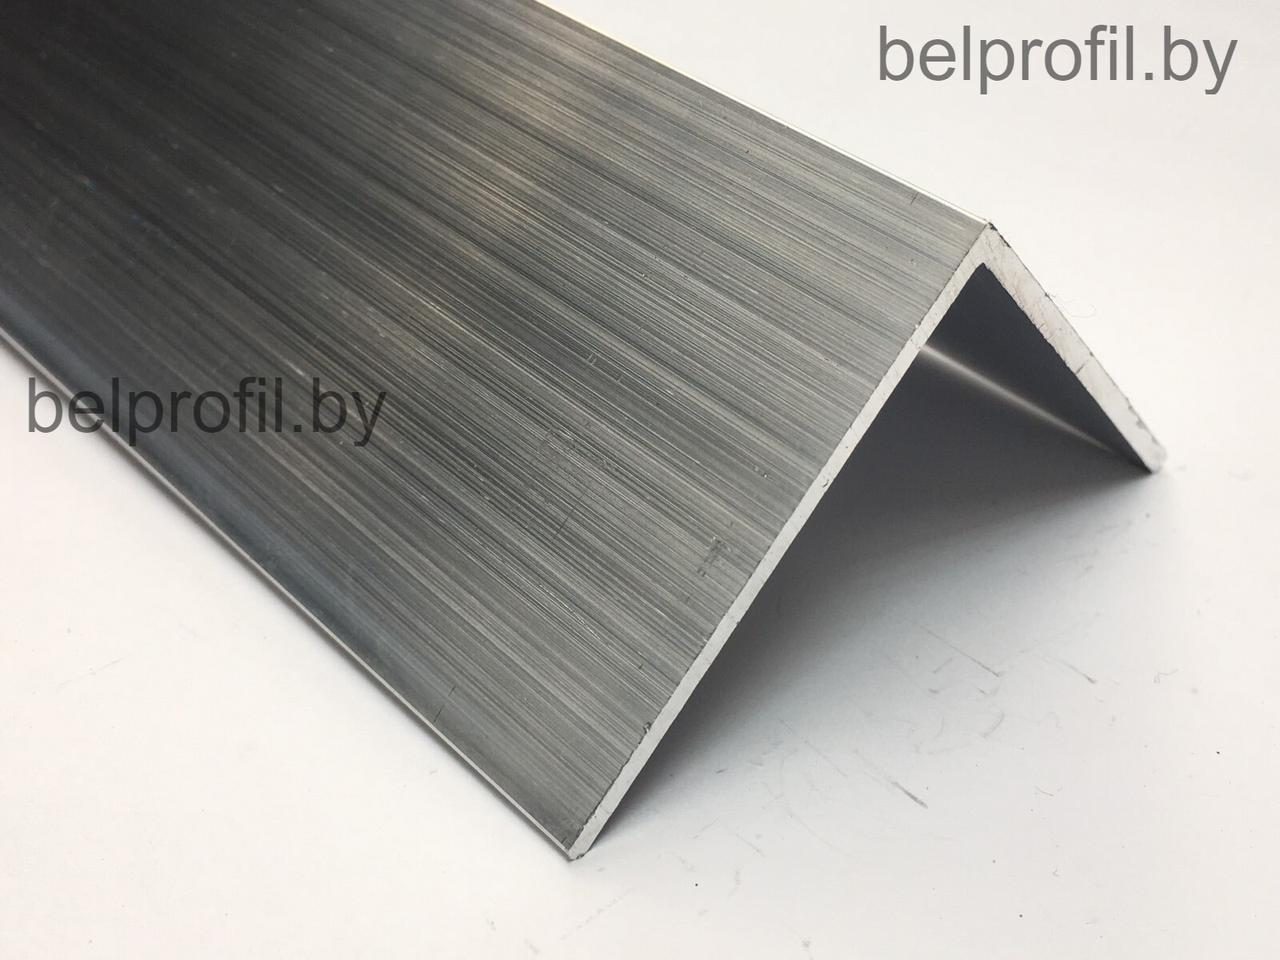 Алюминиевый уголок 50х50х2,0 (2,0 м), фото 1